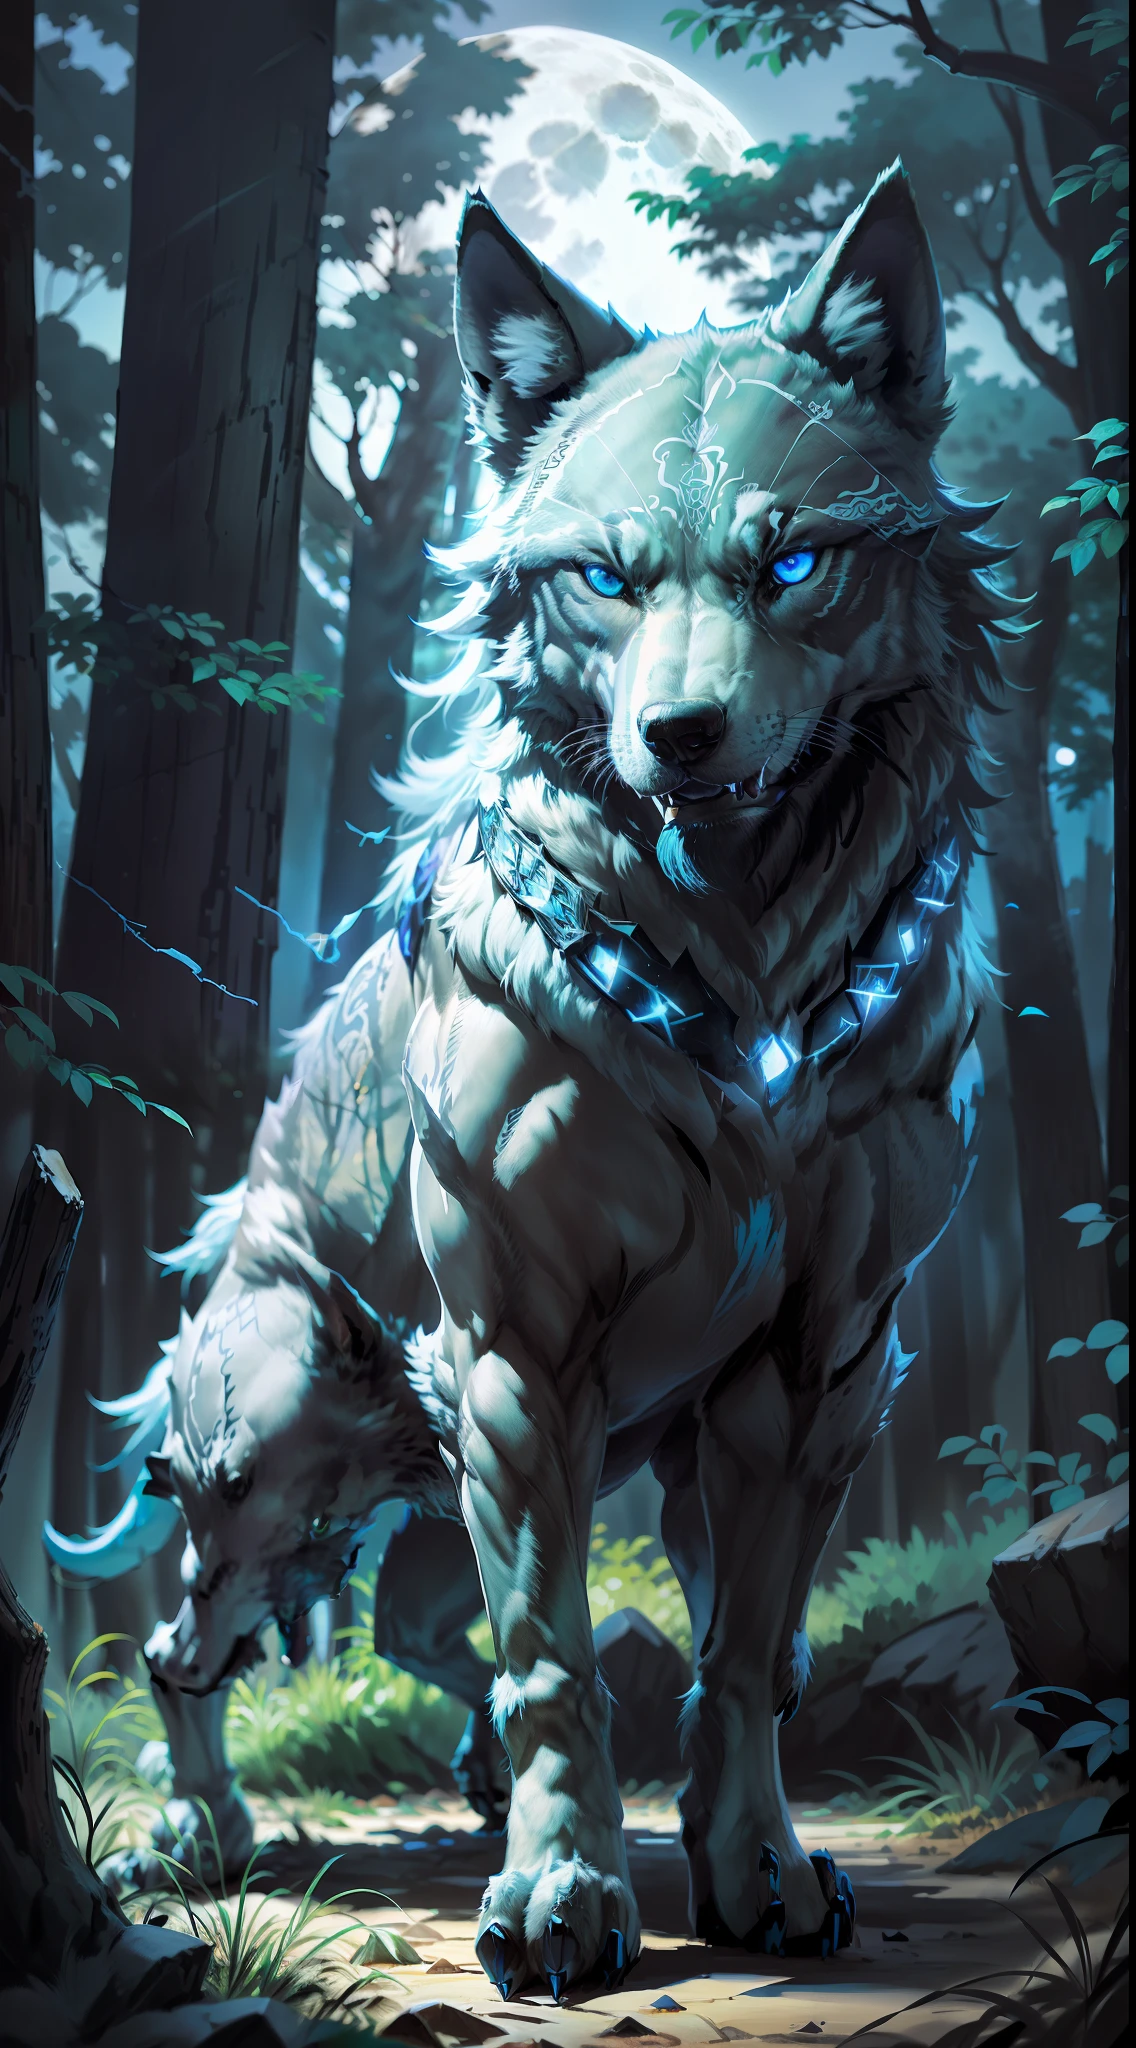 (Imagem aberta fotorrealista) Super lobo protetor da matilha, "lobo de cor preta olhos azuis brilhantes." Matilha canina de lobos, (lua cheia, floresta noturna)